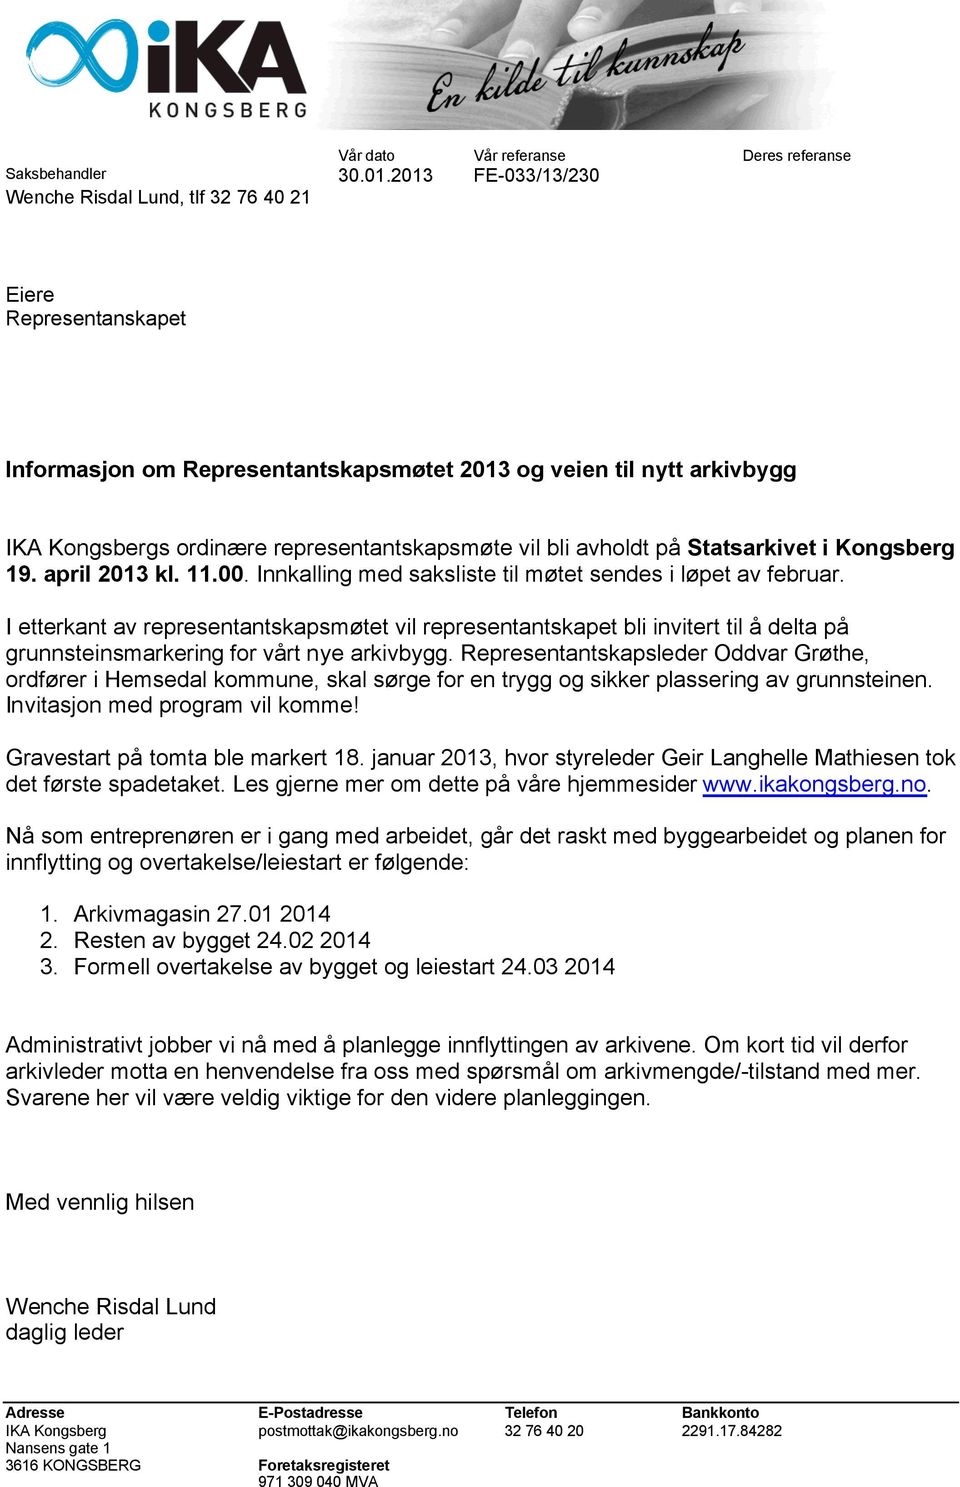 bli avholdt på Statsarkivet i Kongsberg 19. april 2013 kl. 11.00. Innkalling med saksliste til møtet sendes i løpet av februar.